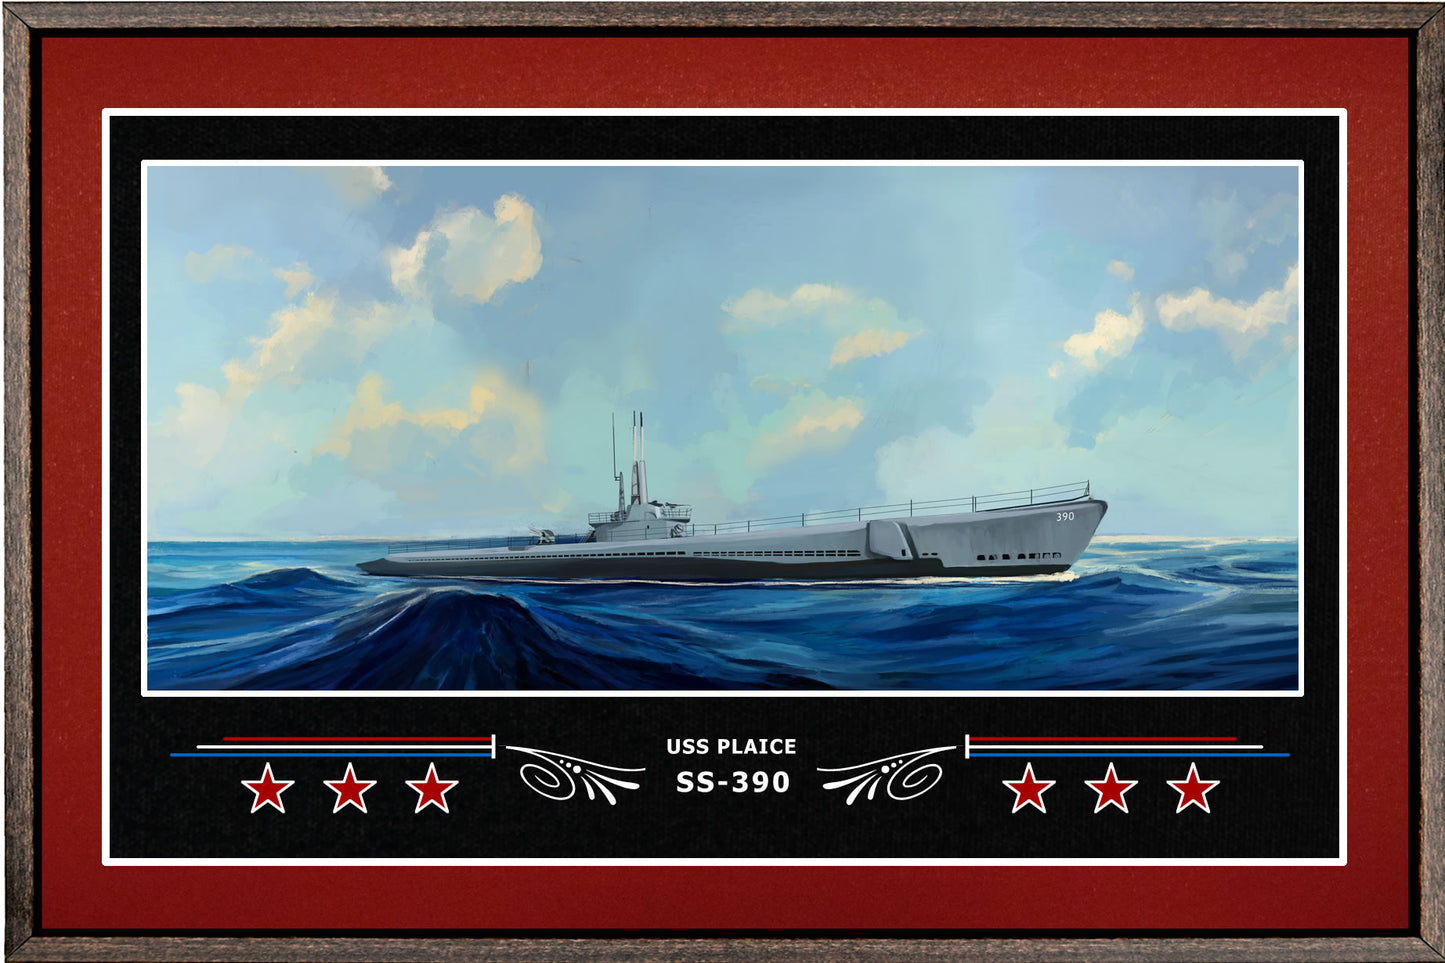 USS PLAICE SS 390 BOX FRAMED CANVAS ART BURGUNDY